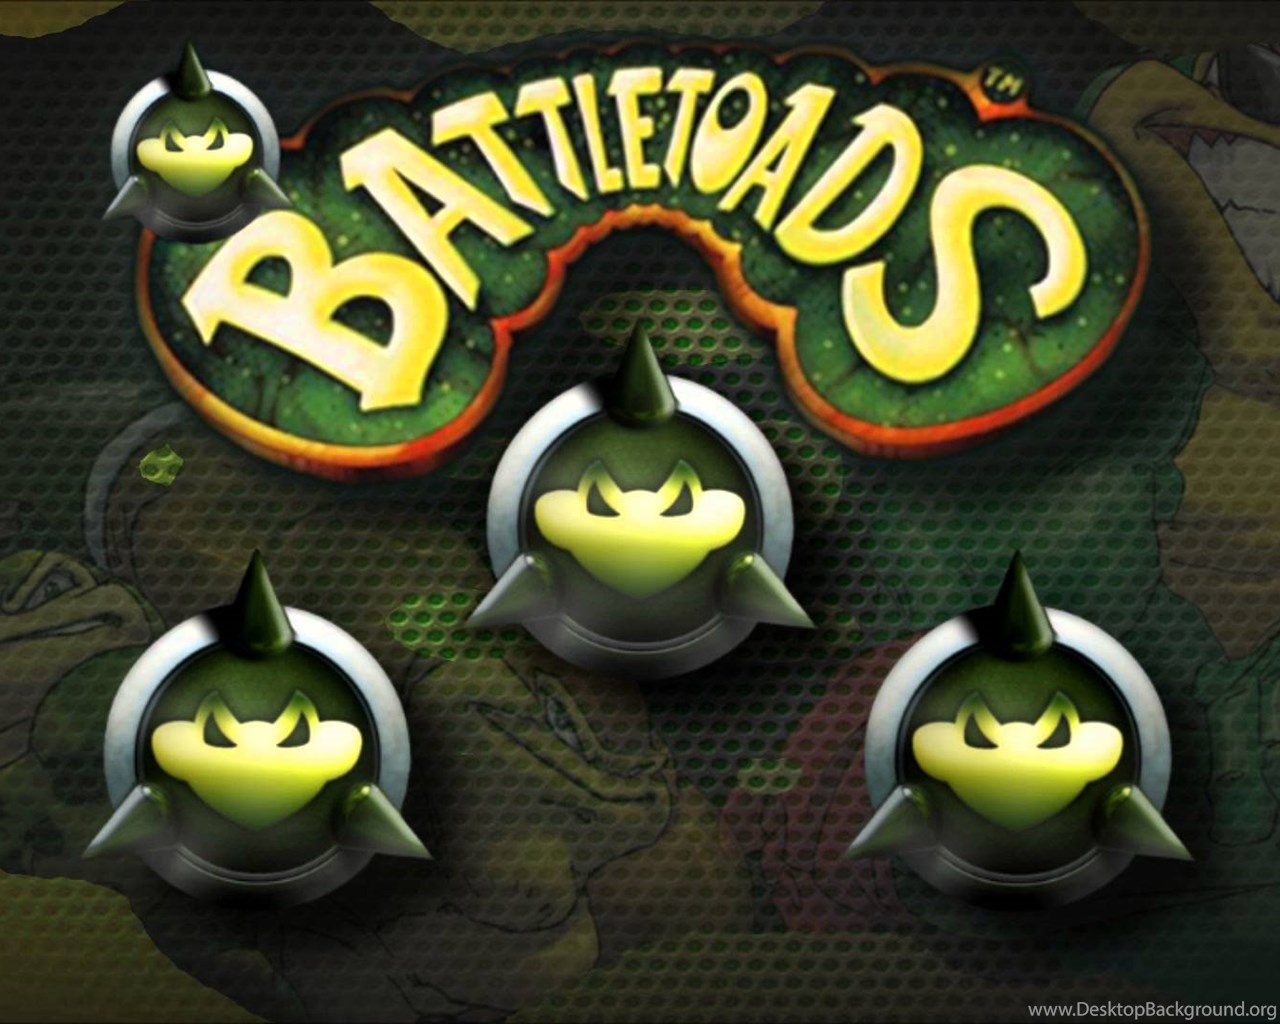 Battletoads разработчики. Battletoads. Логотип батлтоадс. Battletoads 2020 logo. Battletoads испуг.